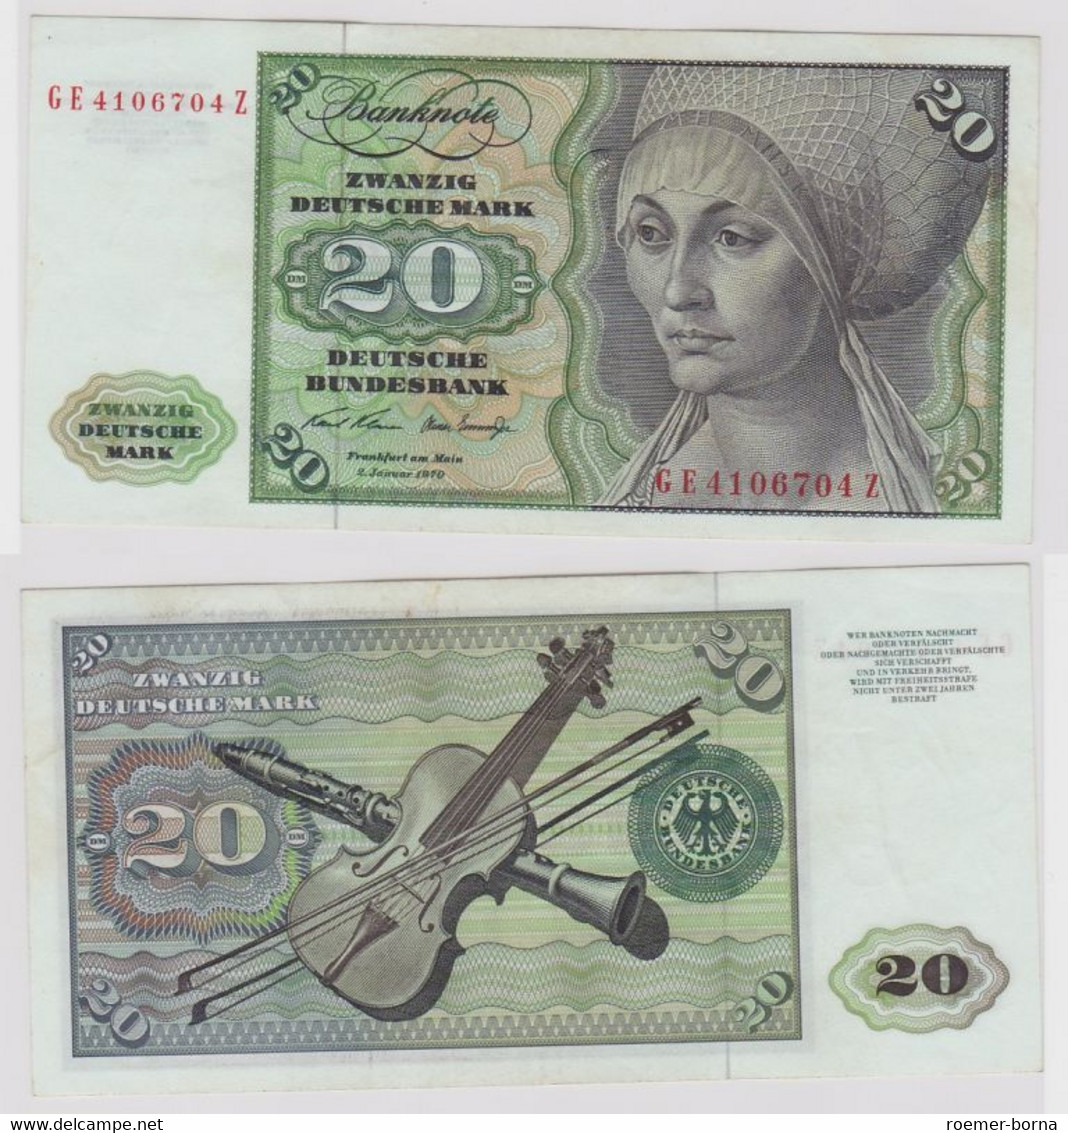 T148435 Banknote 20 DM Deutsche Mark Ro. 271b Schein 2.Jan. 1970 KN GE 4106704 Z - 20 DM